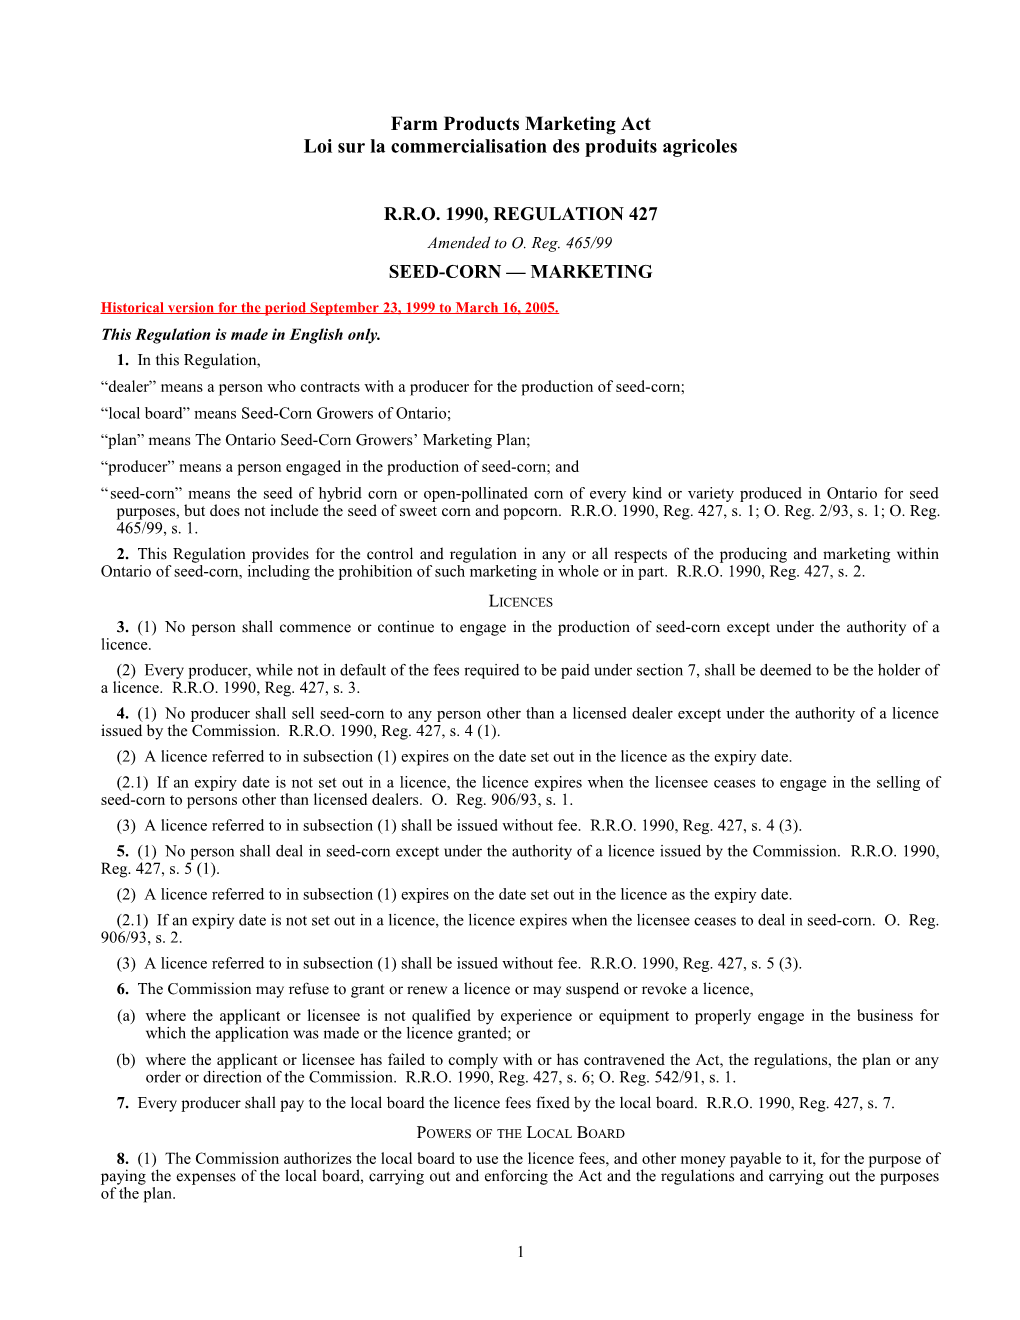 Farm Products Marketing Act - R.R.O. 1990, Reg. 427